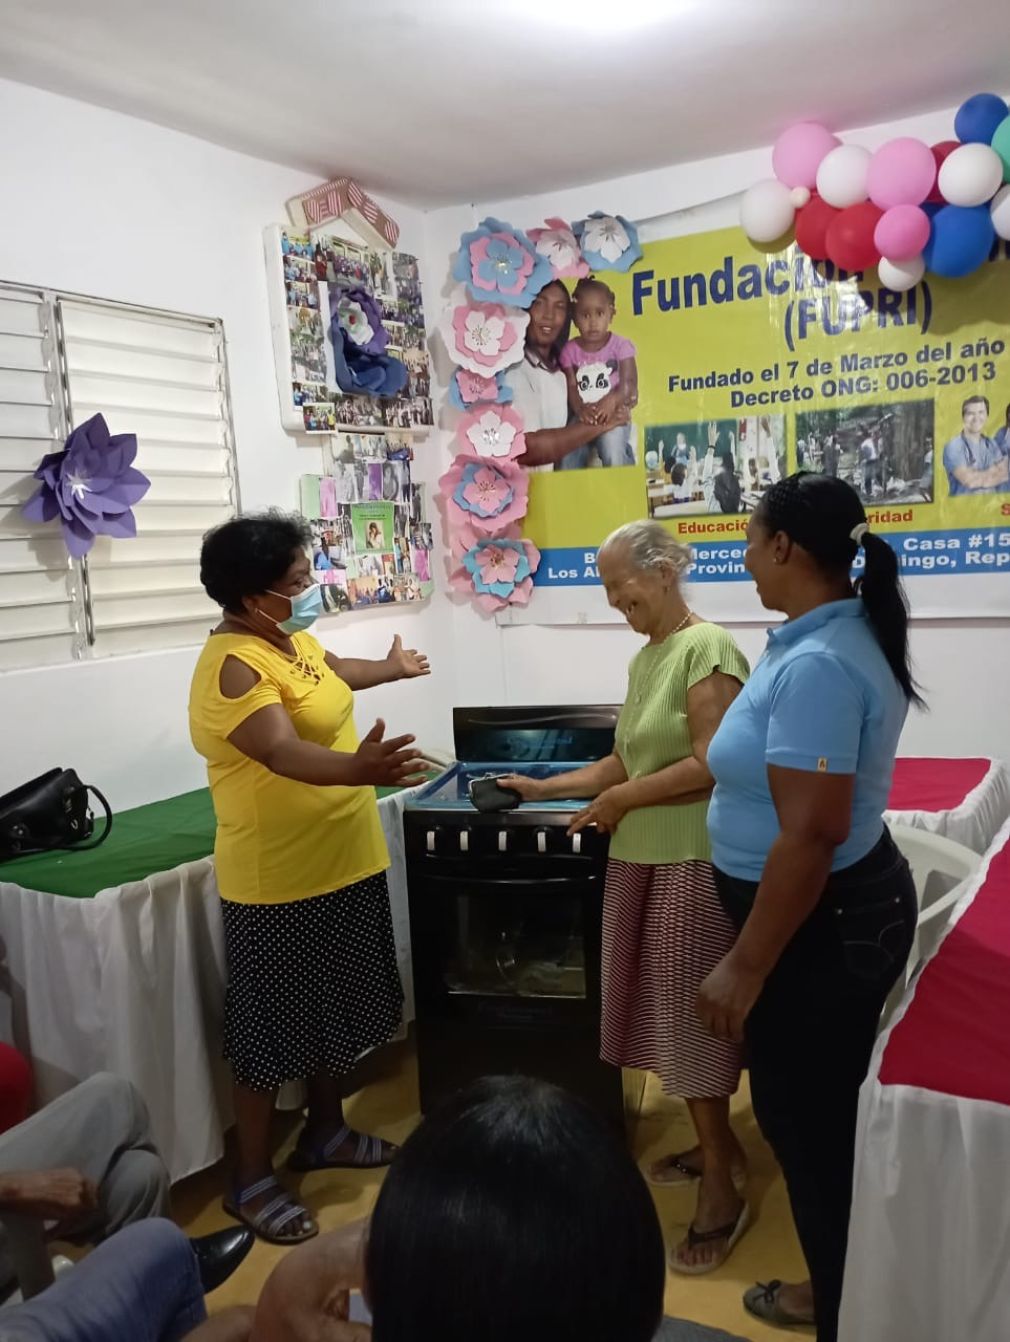 La señora Primitiva Frias (camiseta azul) junto a personas beneficiadas por la fundación que preside.